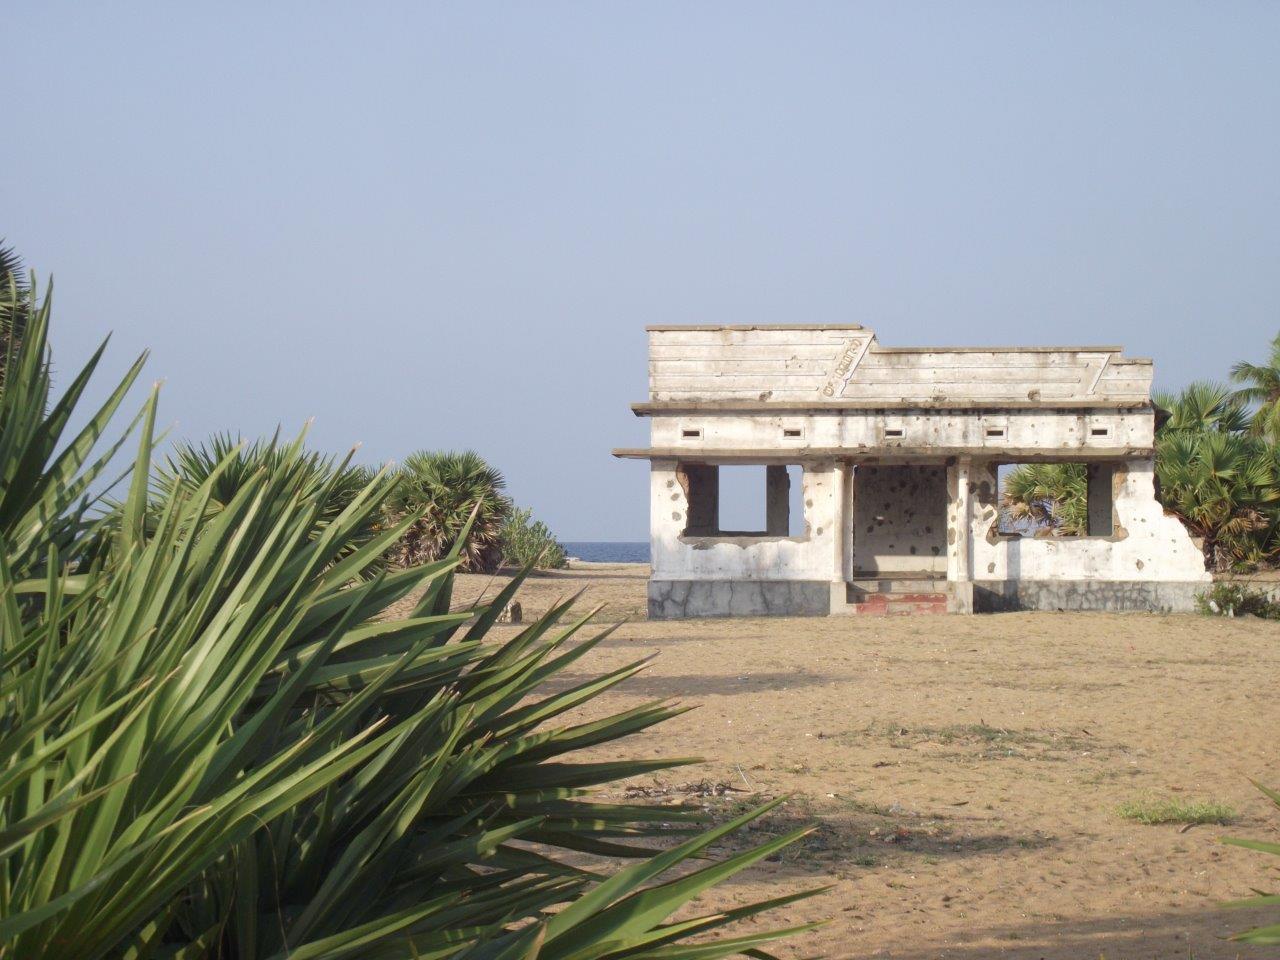 Immagine di una casa in riva all’oceano crivellata di colpi.